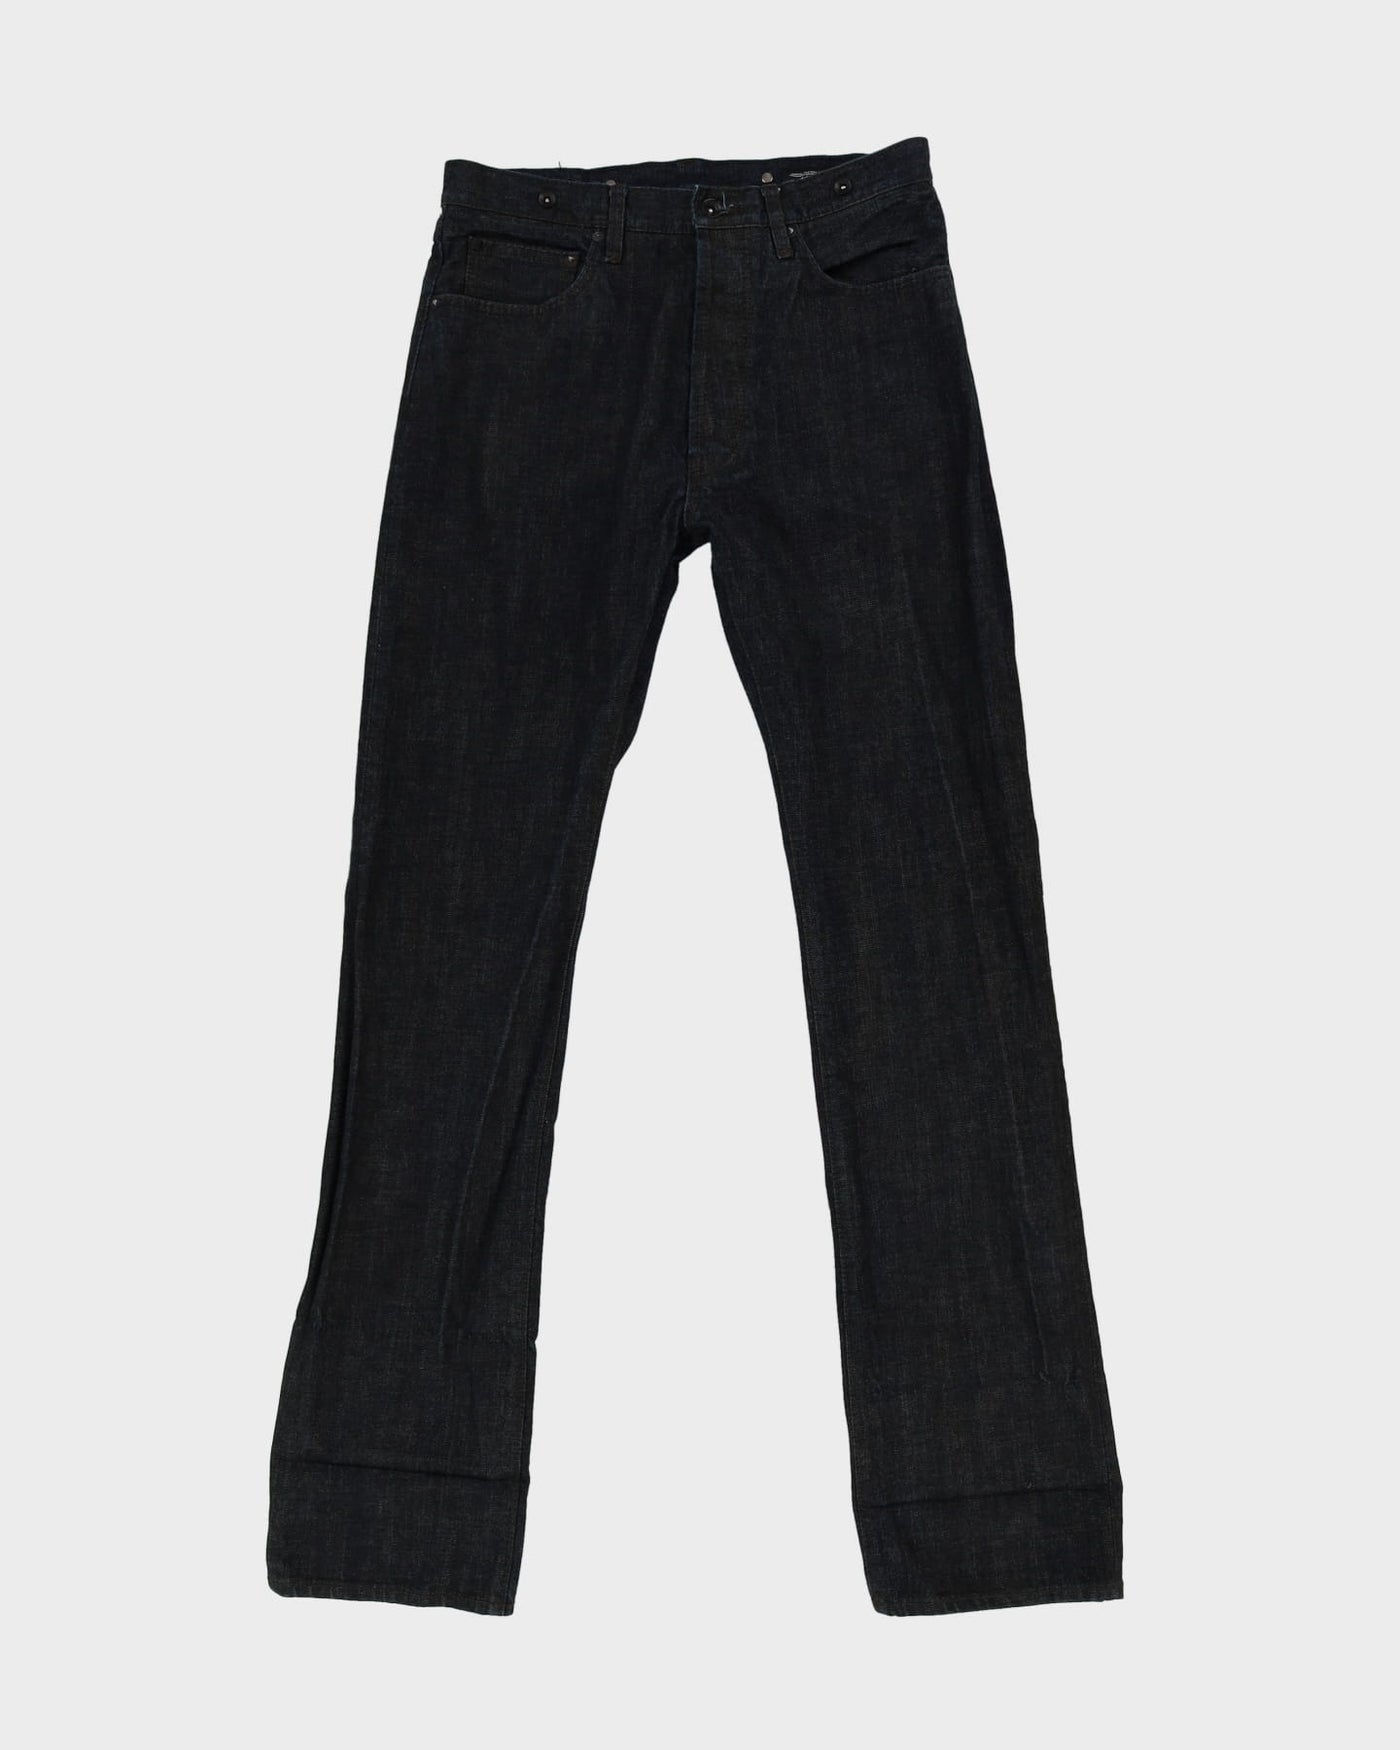 Warhol Factory X Levi's Dark Wash Navy Andy Warhol Jeans - W34 L37